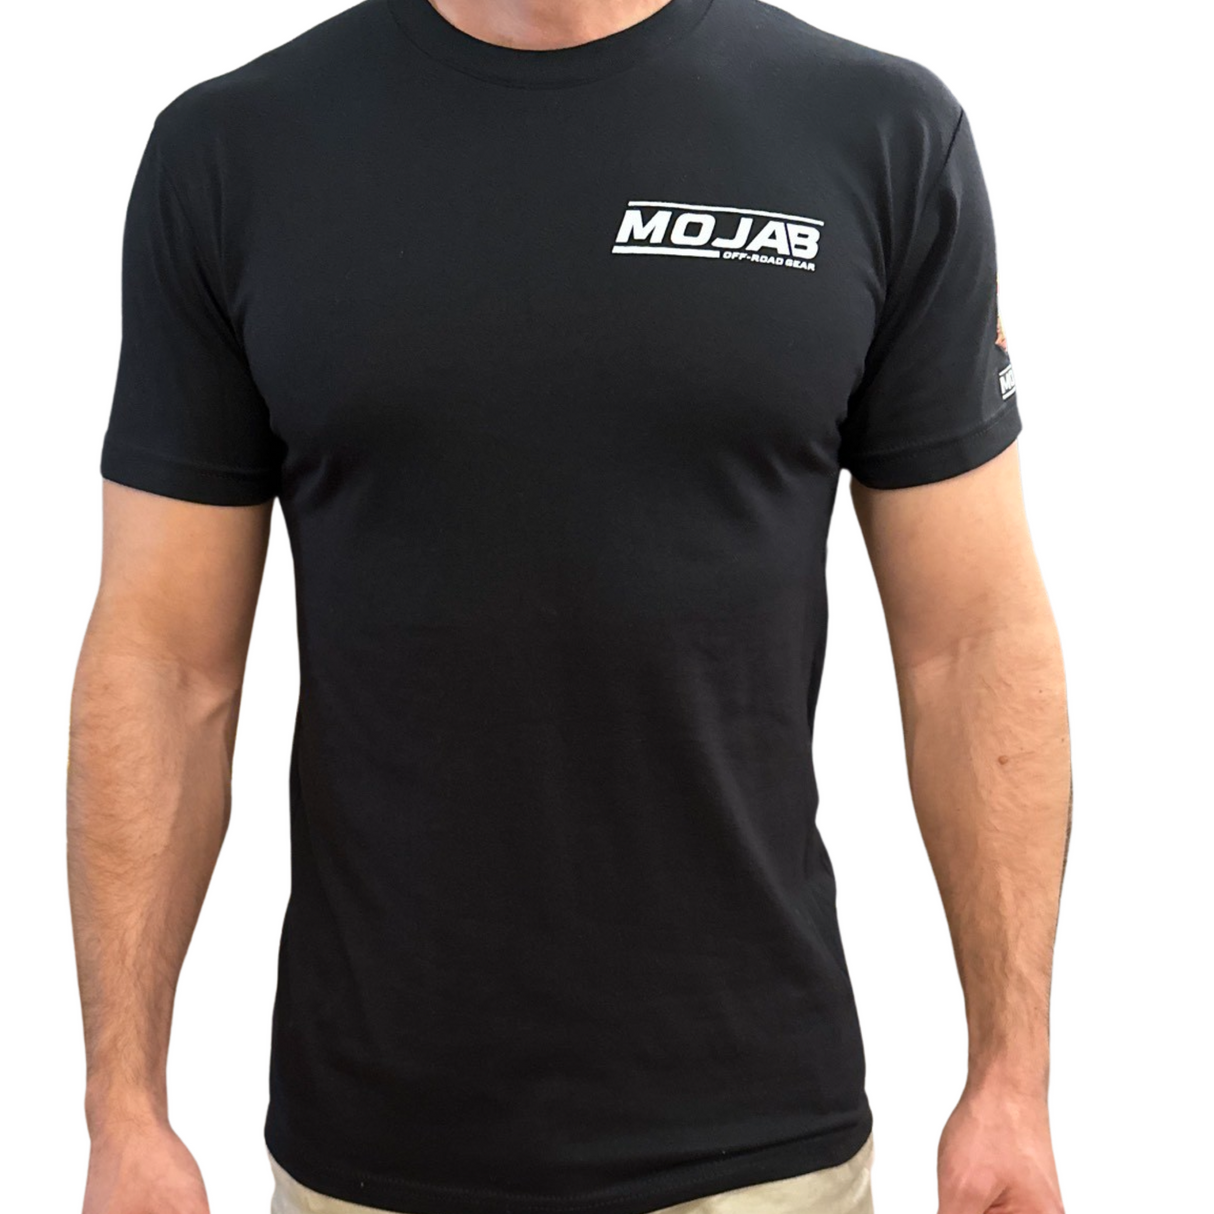 Mojab Short Sleeve t-shirt.